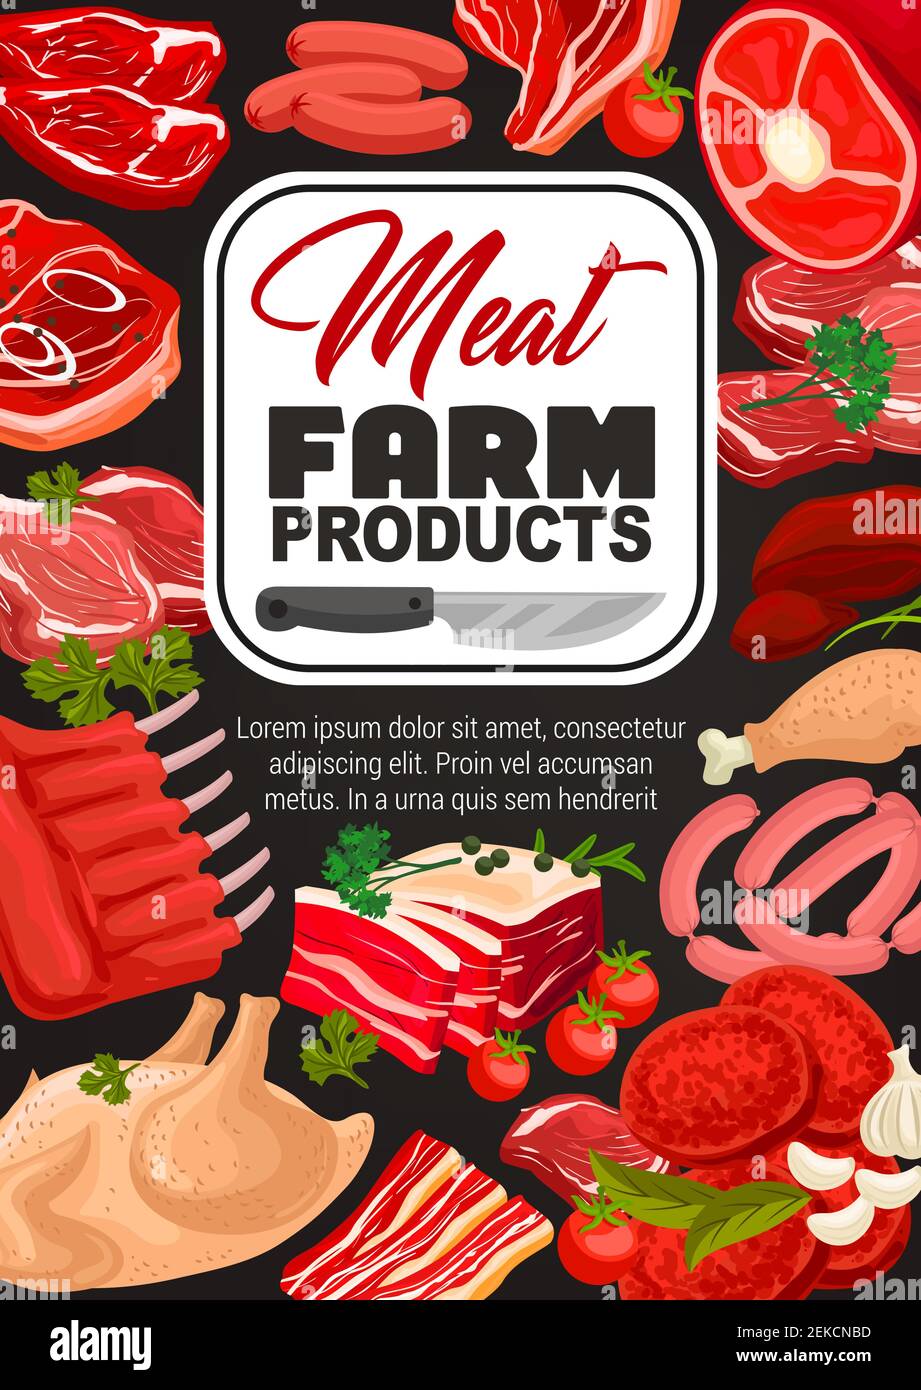 Fleisch und Würste Vektor-Design von landwirtschaftlichen Lebensmitteln mit Kräutern und Metzgermesser. Schweinswürste, Grillfleisch Steaks und Sirloin, Huhn, Lamm Rin Stock Vektor